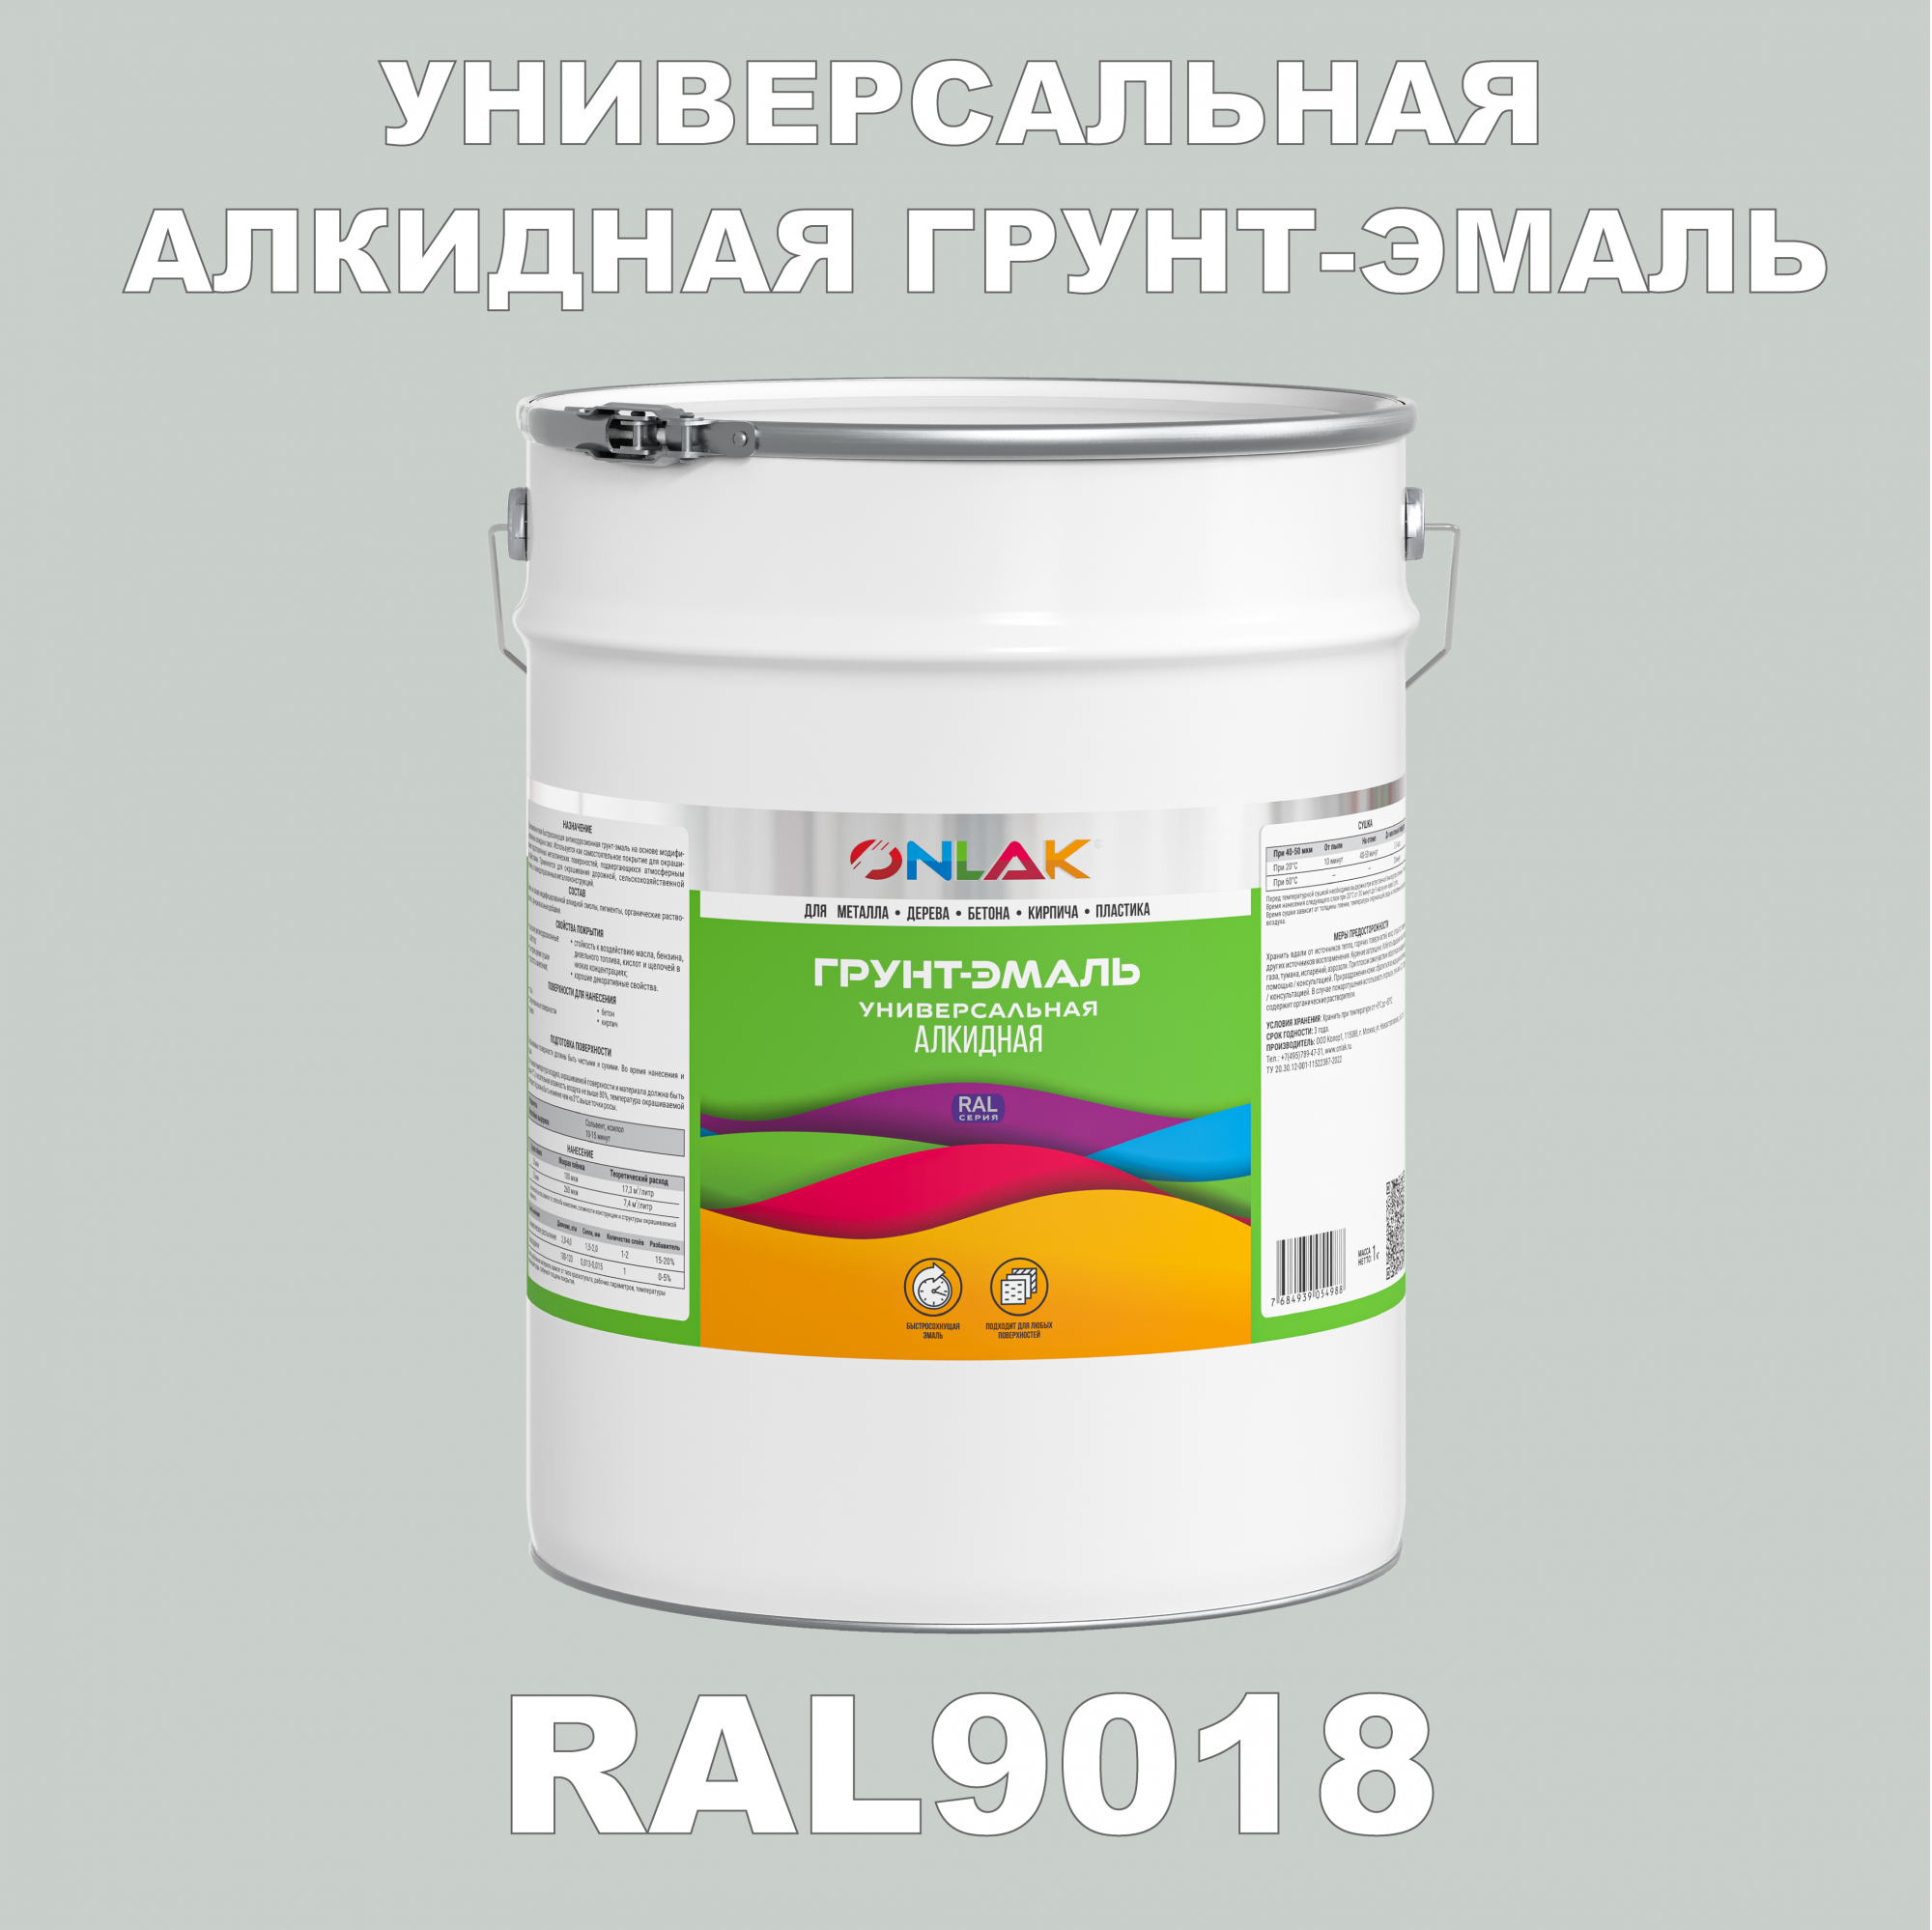 Грунт-эмаль ONLAK 1К RAL9018 антикоррозионная алкидная по металлу по ржавчине 20 кг грунт эмаль yollo по ржавчине алкидная белая 0 9 кг